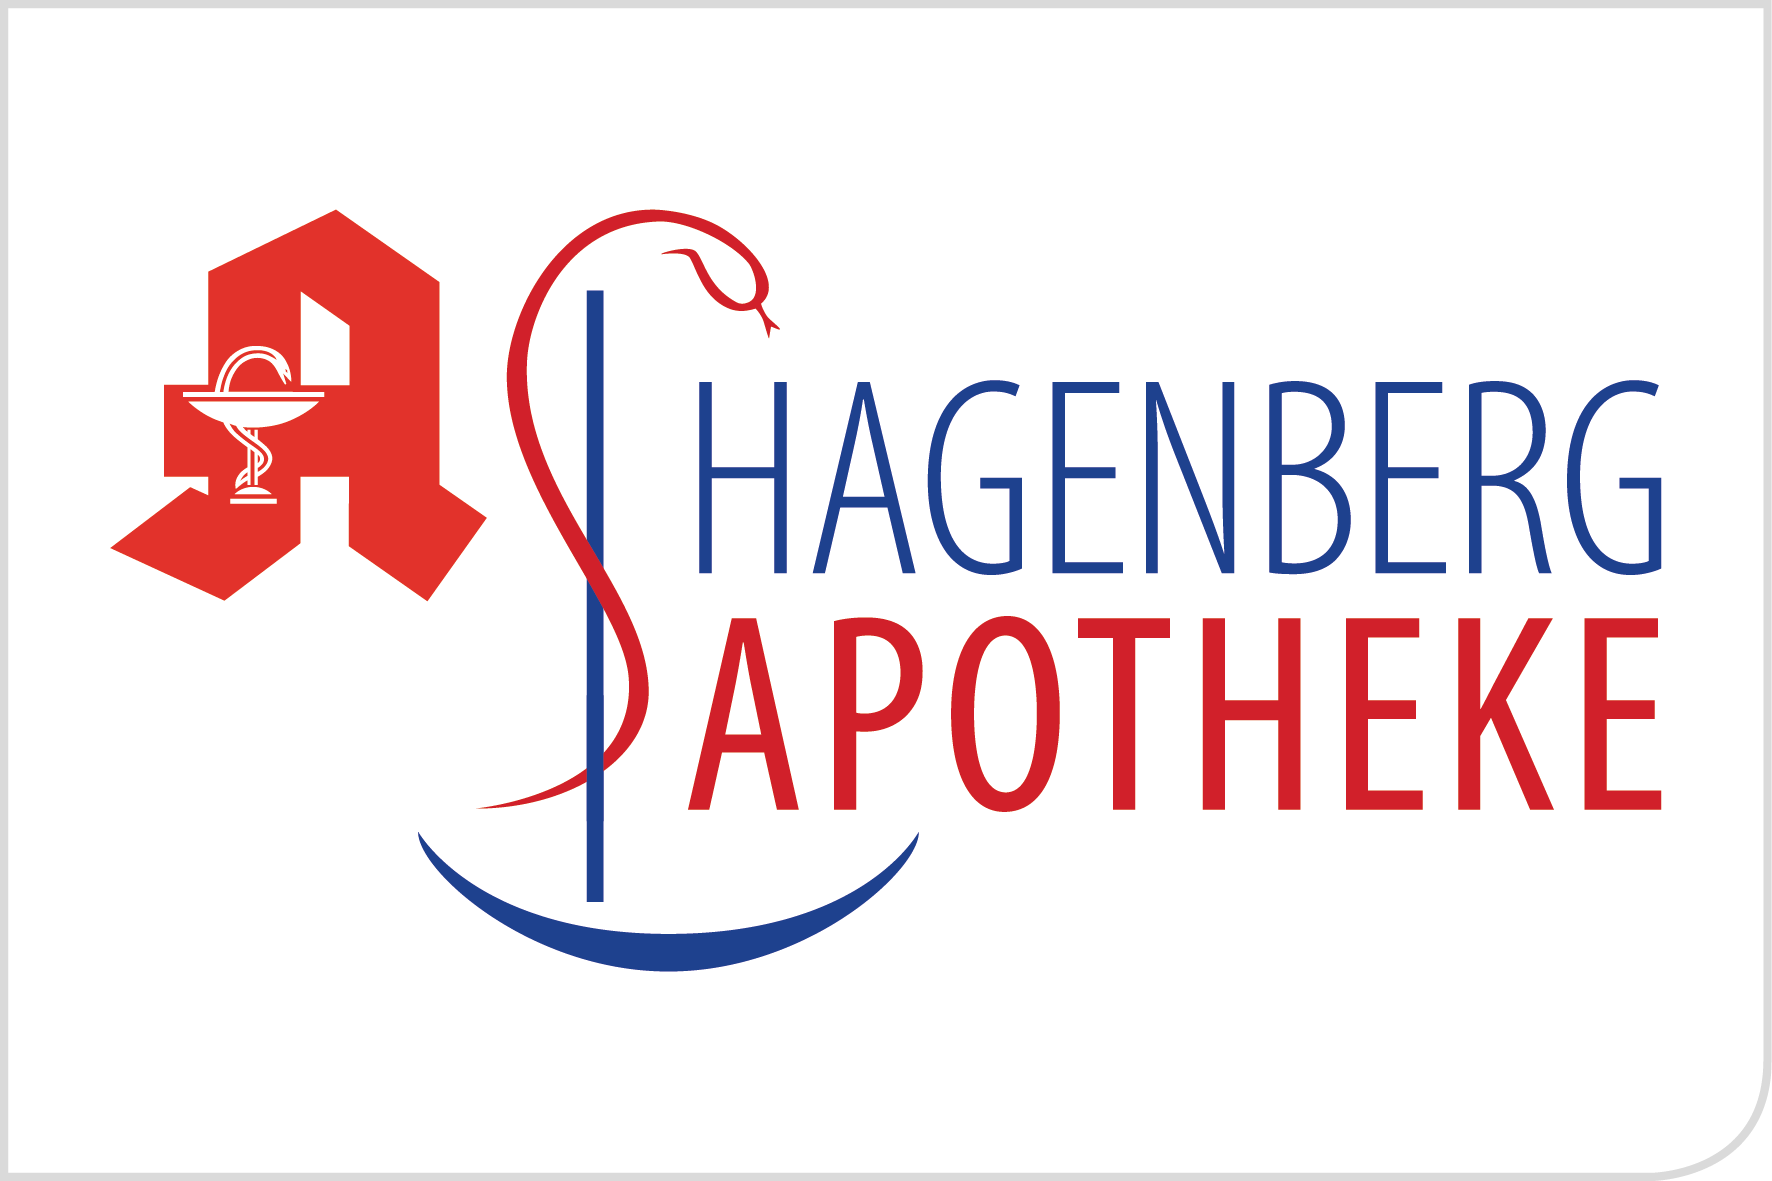 Hagen_Logo.jpg